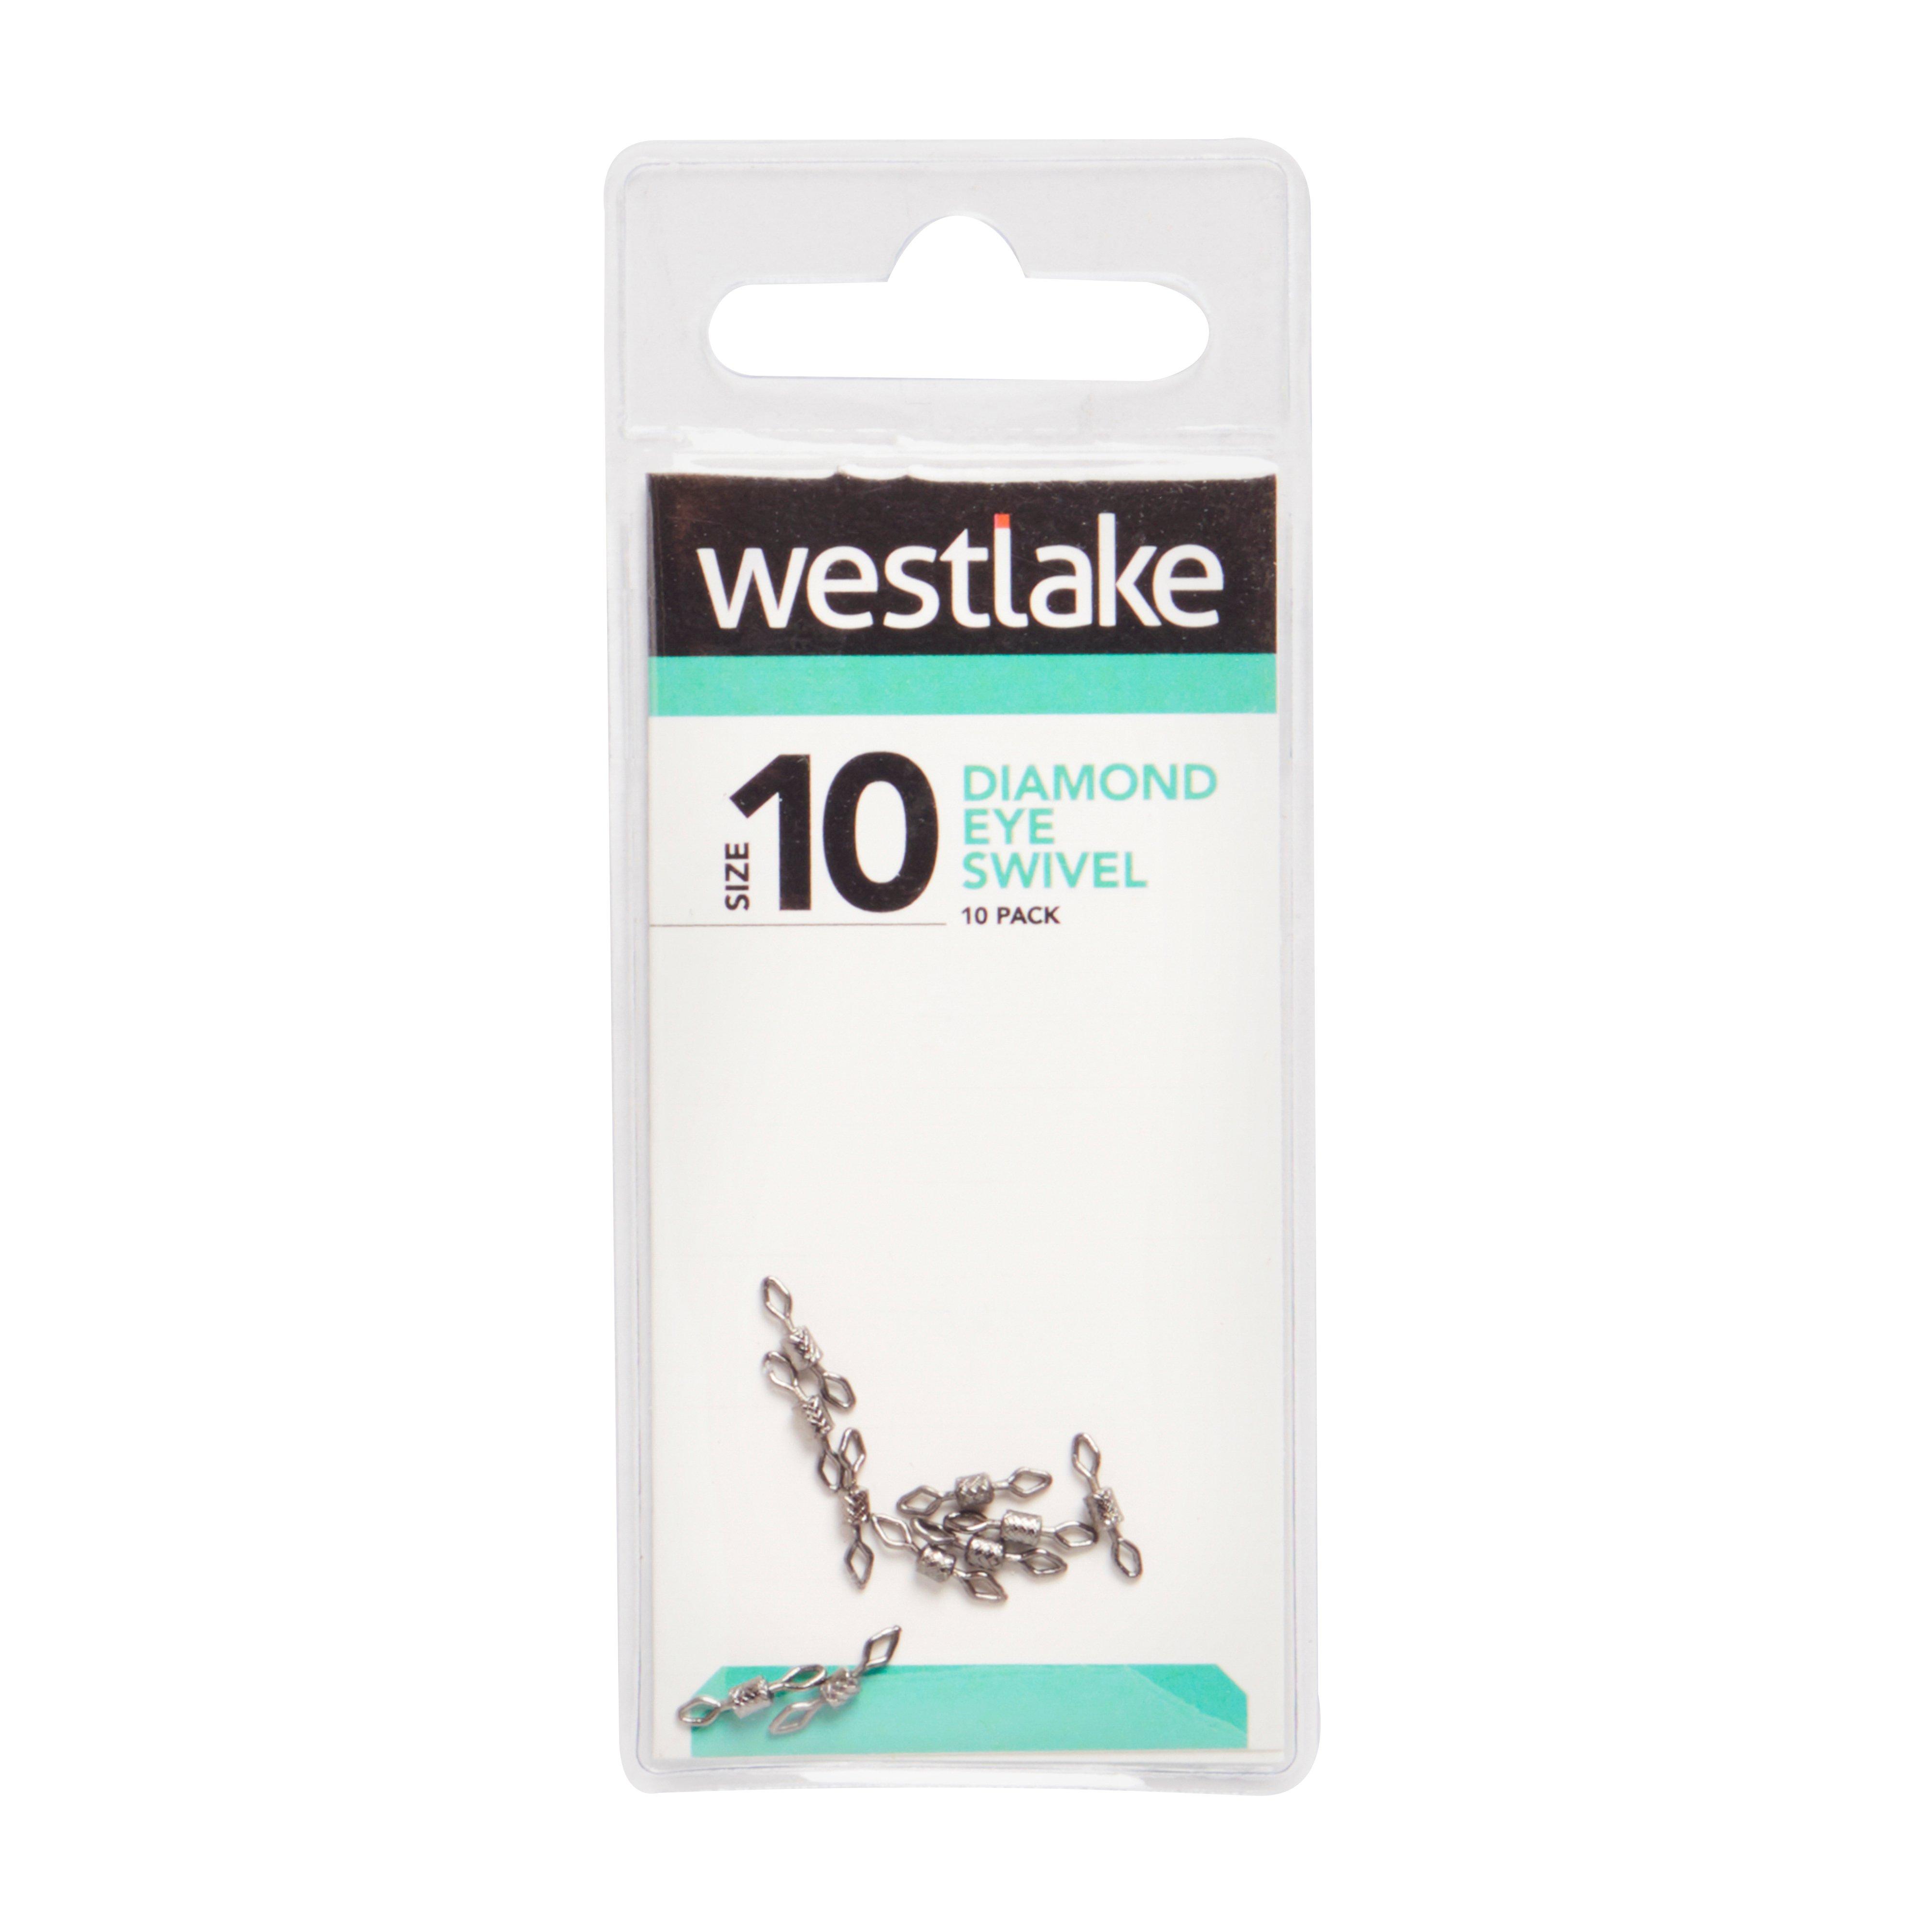 Westlake Diamond Eye Swivel Size10 10Pc Review